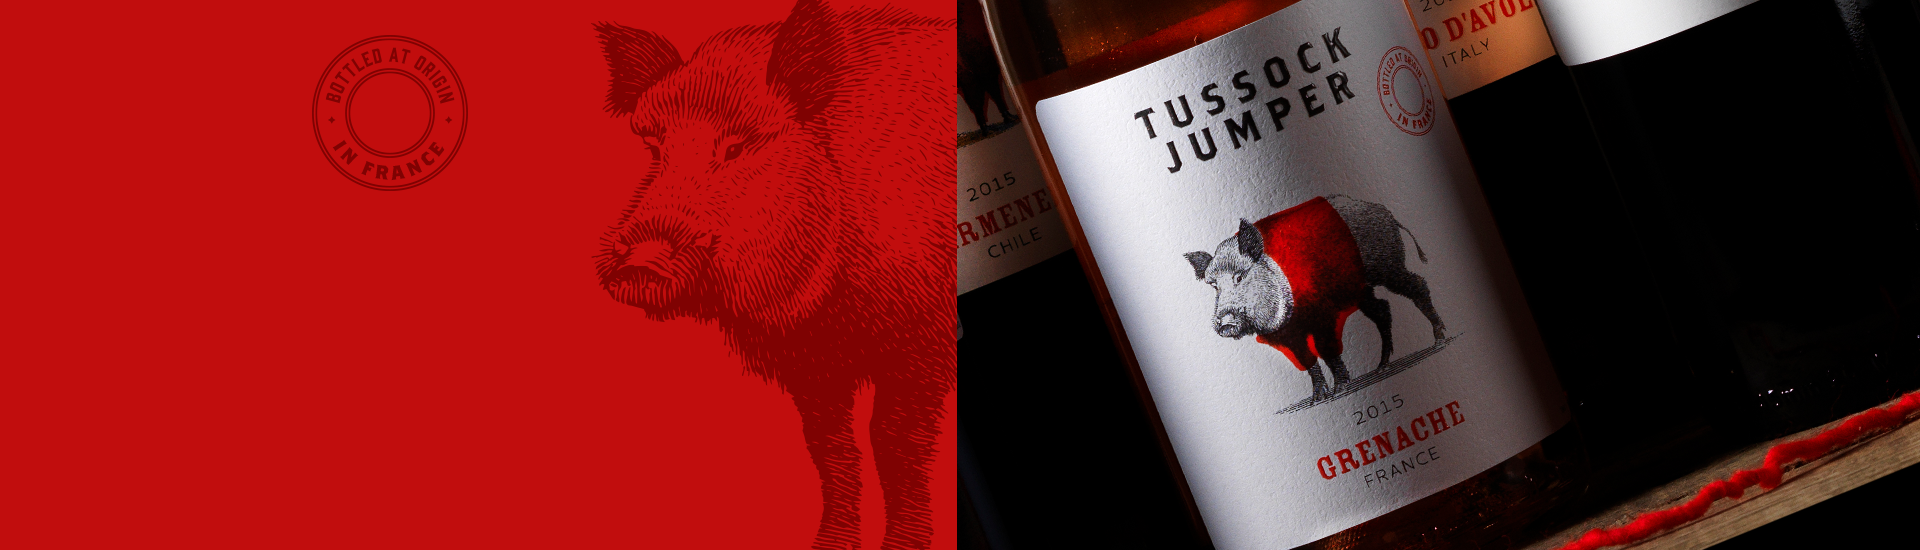 Tussock Jumper Wines - France - Grenache rose